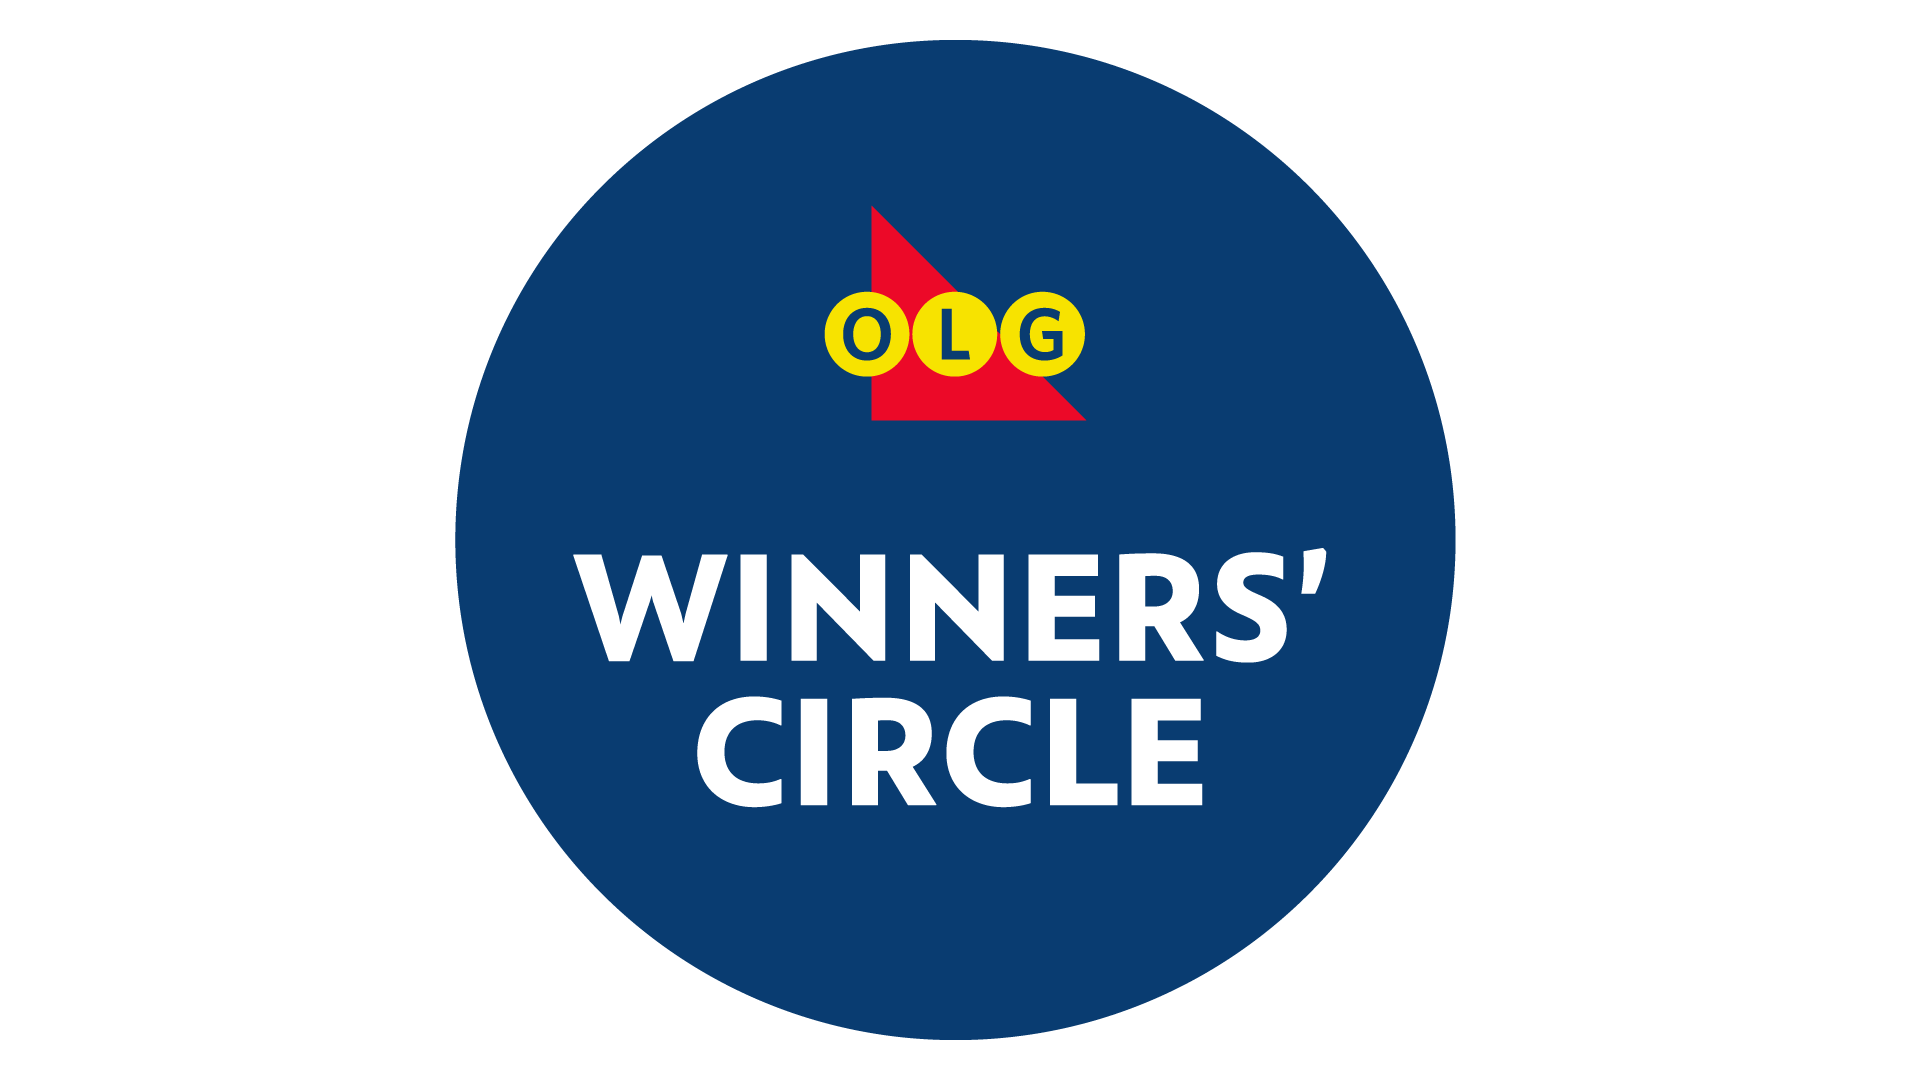 Olg Winners Circle Rewards